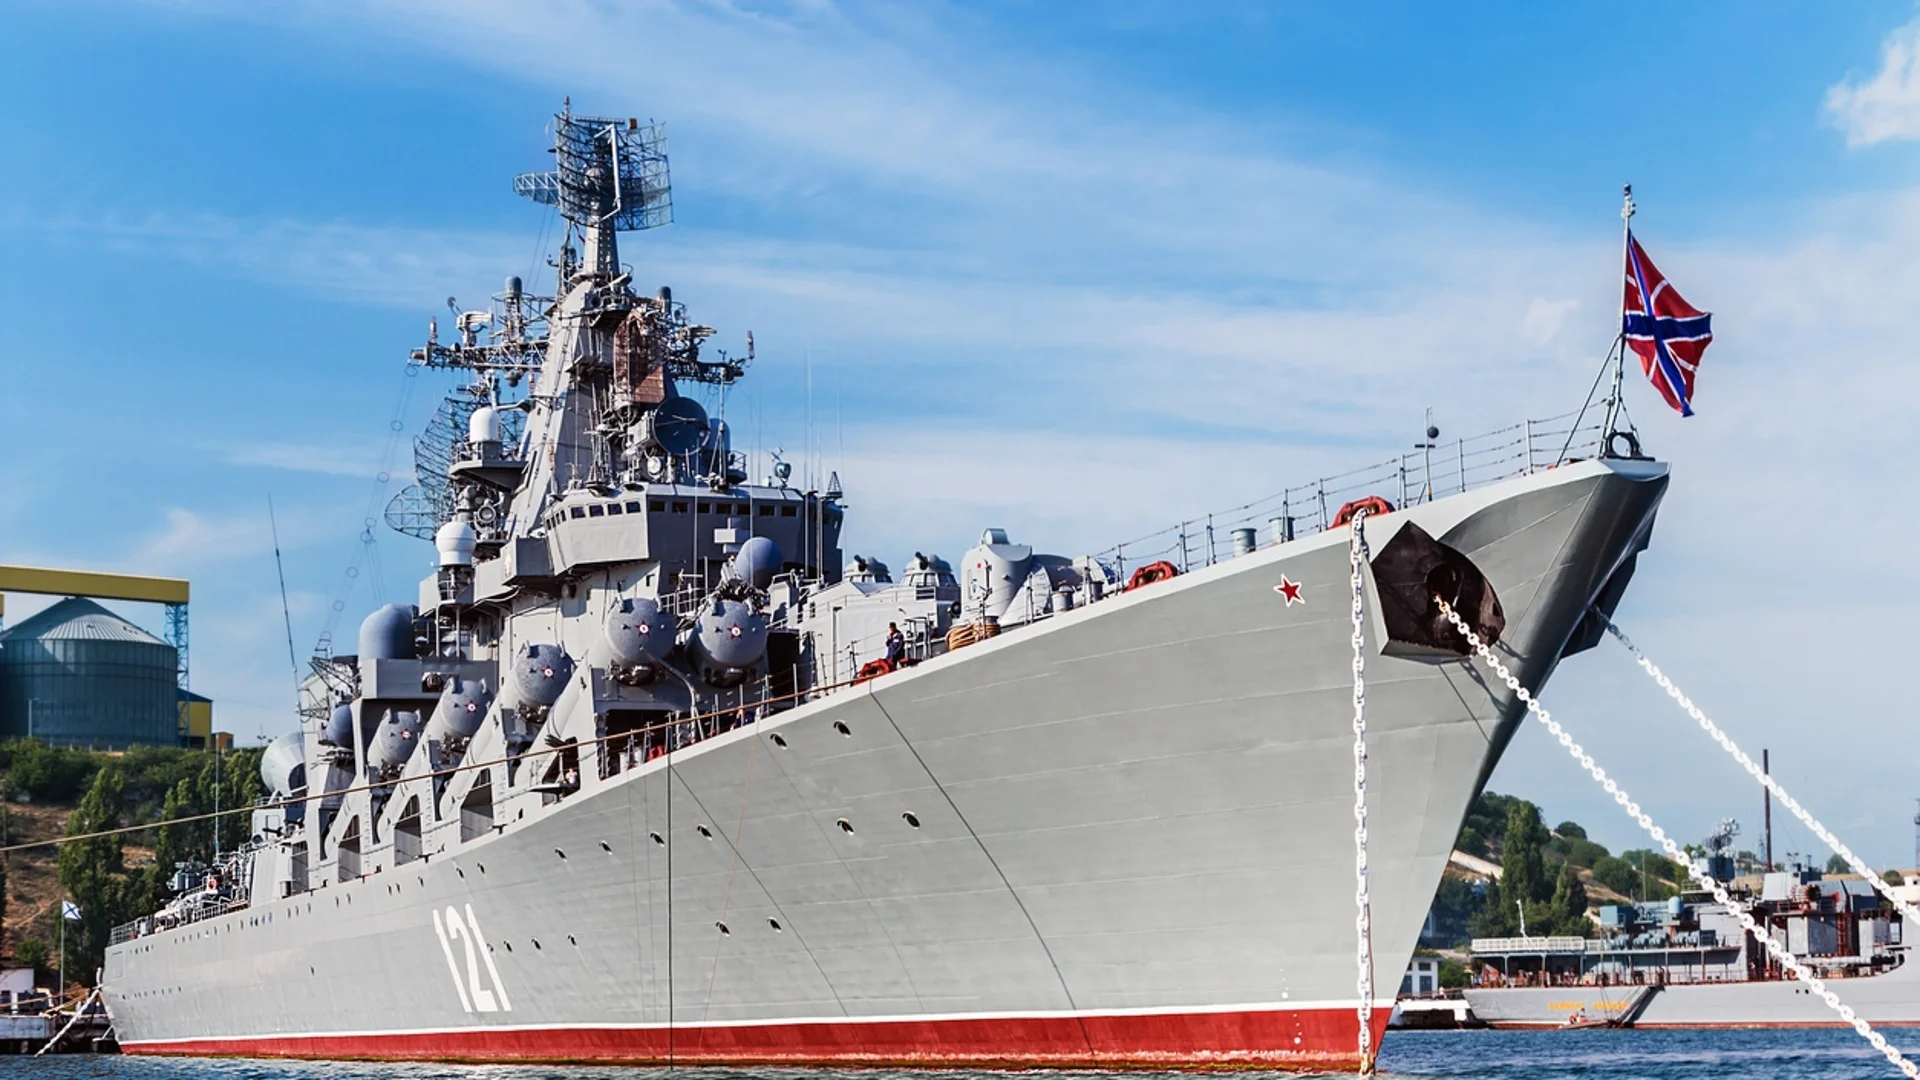 17 кораба по-малко: Какво остана от Руския черноморски флот (СНИМКИ)